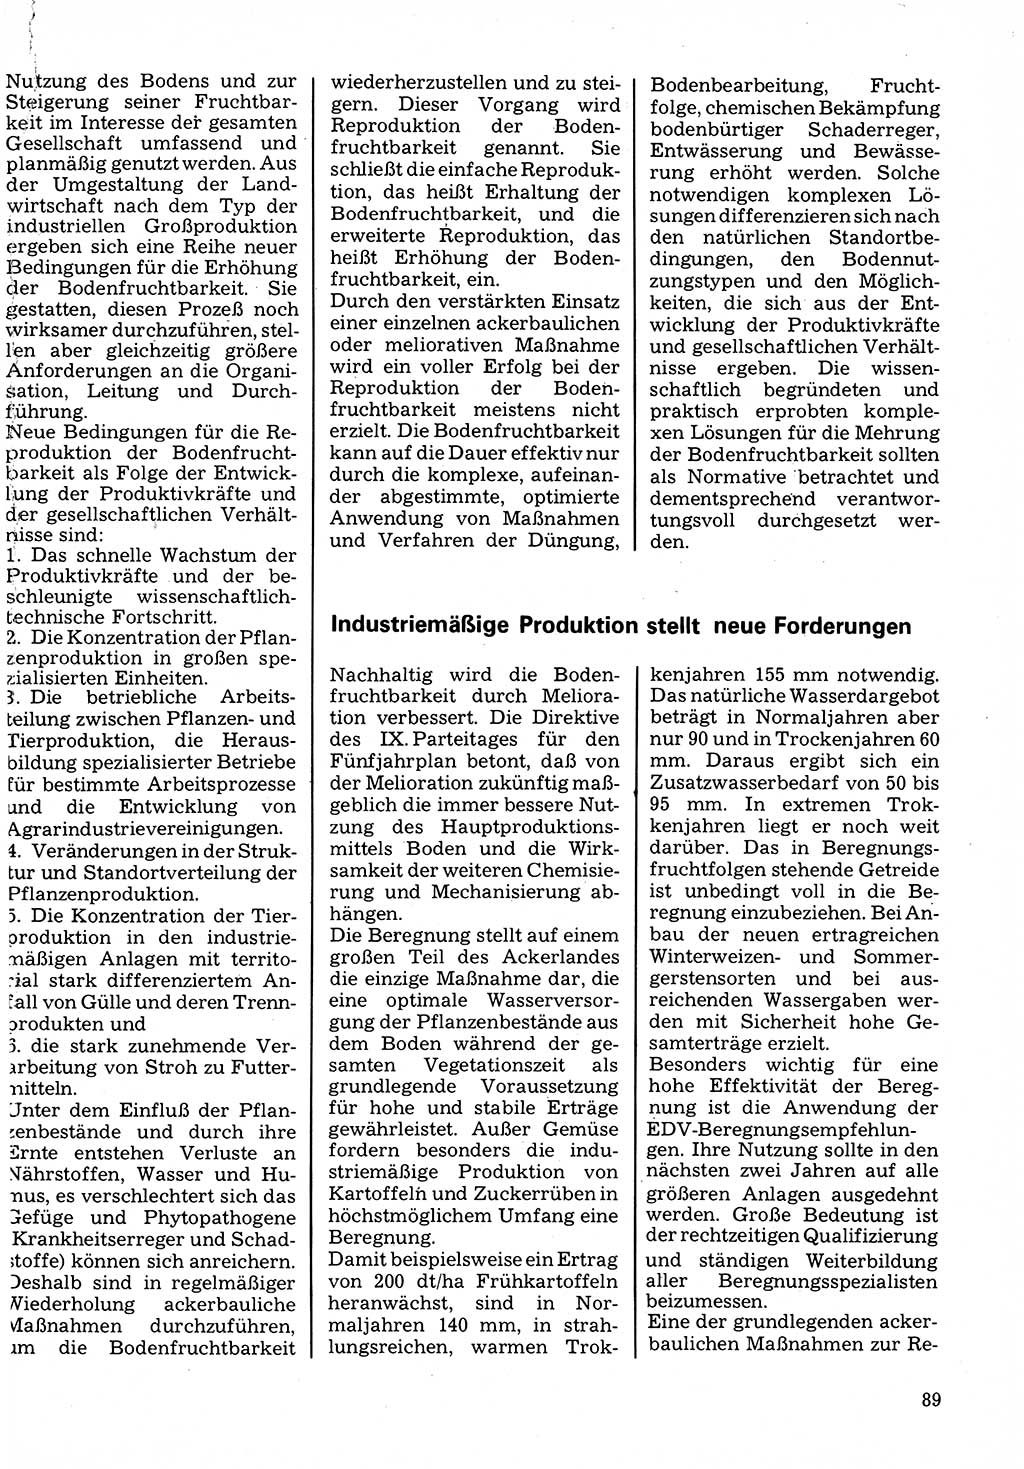 Neuer Weg (NW), Organ des Zentralkomitees (ZK) der SED (Sozialistische Einheitspartei Deutschlands) für Fragen des Parteilebens, 32. Jahrgang [Deutsche Demokratische Republik (DDR)] 1977, Seite 89 (NW ZK SED DDR 1977, S. 89)